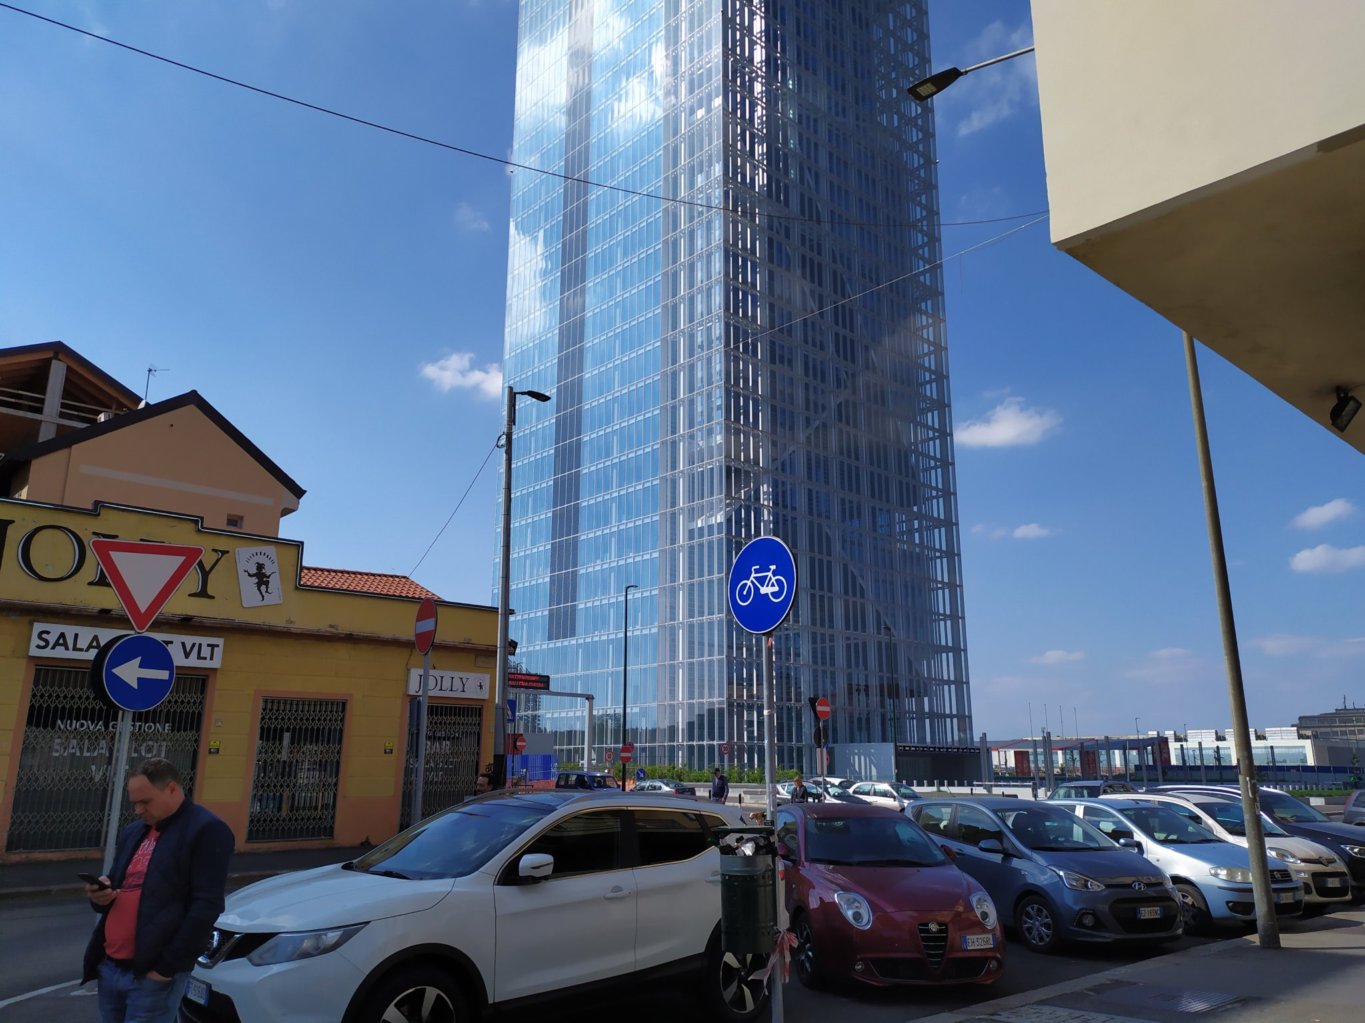 Grattacielo della Regione Piemonte senza parcheggio bici